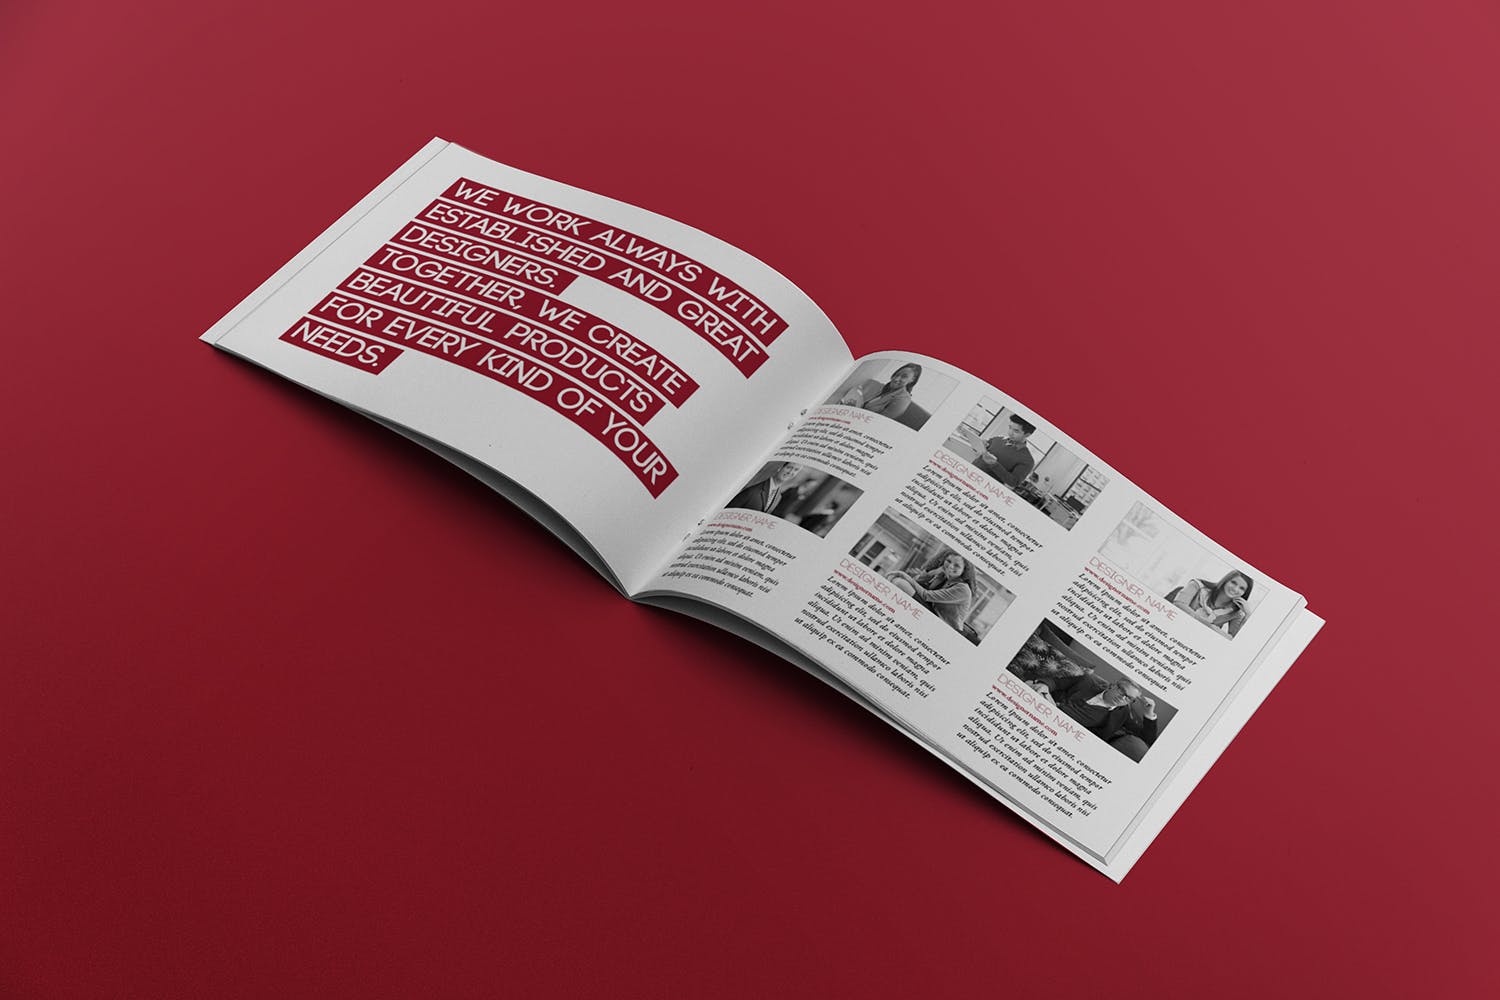 宣传画册/企业画册内页版式设计图样机非凡图库精选 Open Landscape Brochure Mockup插图(2)